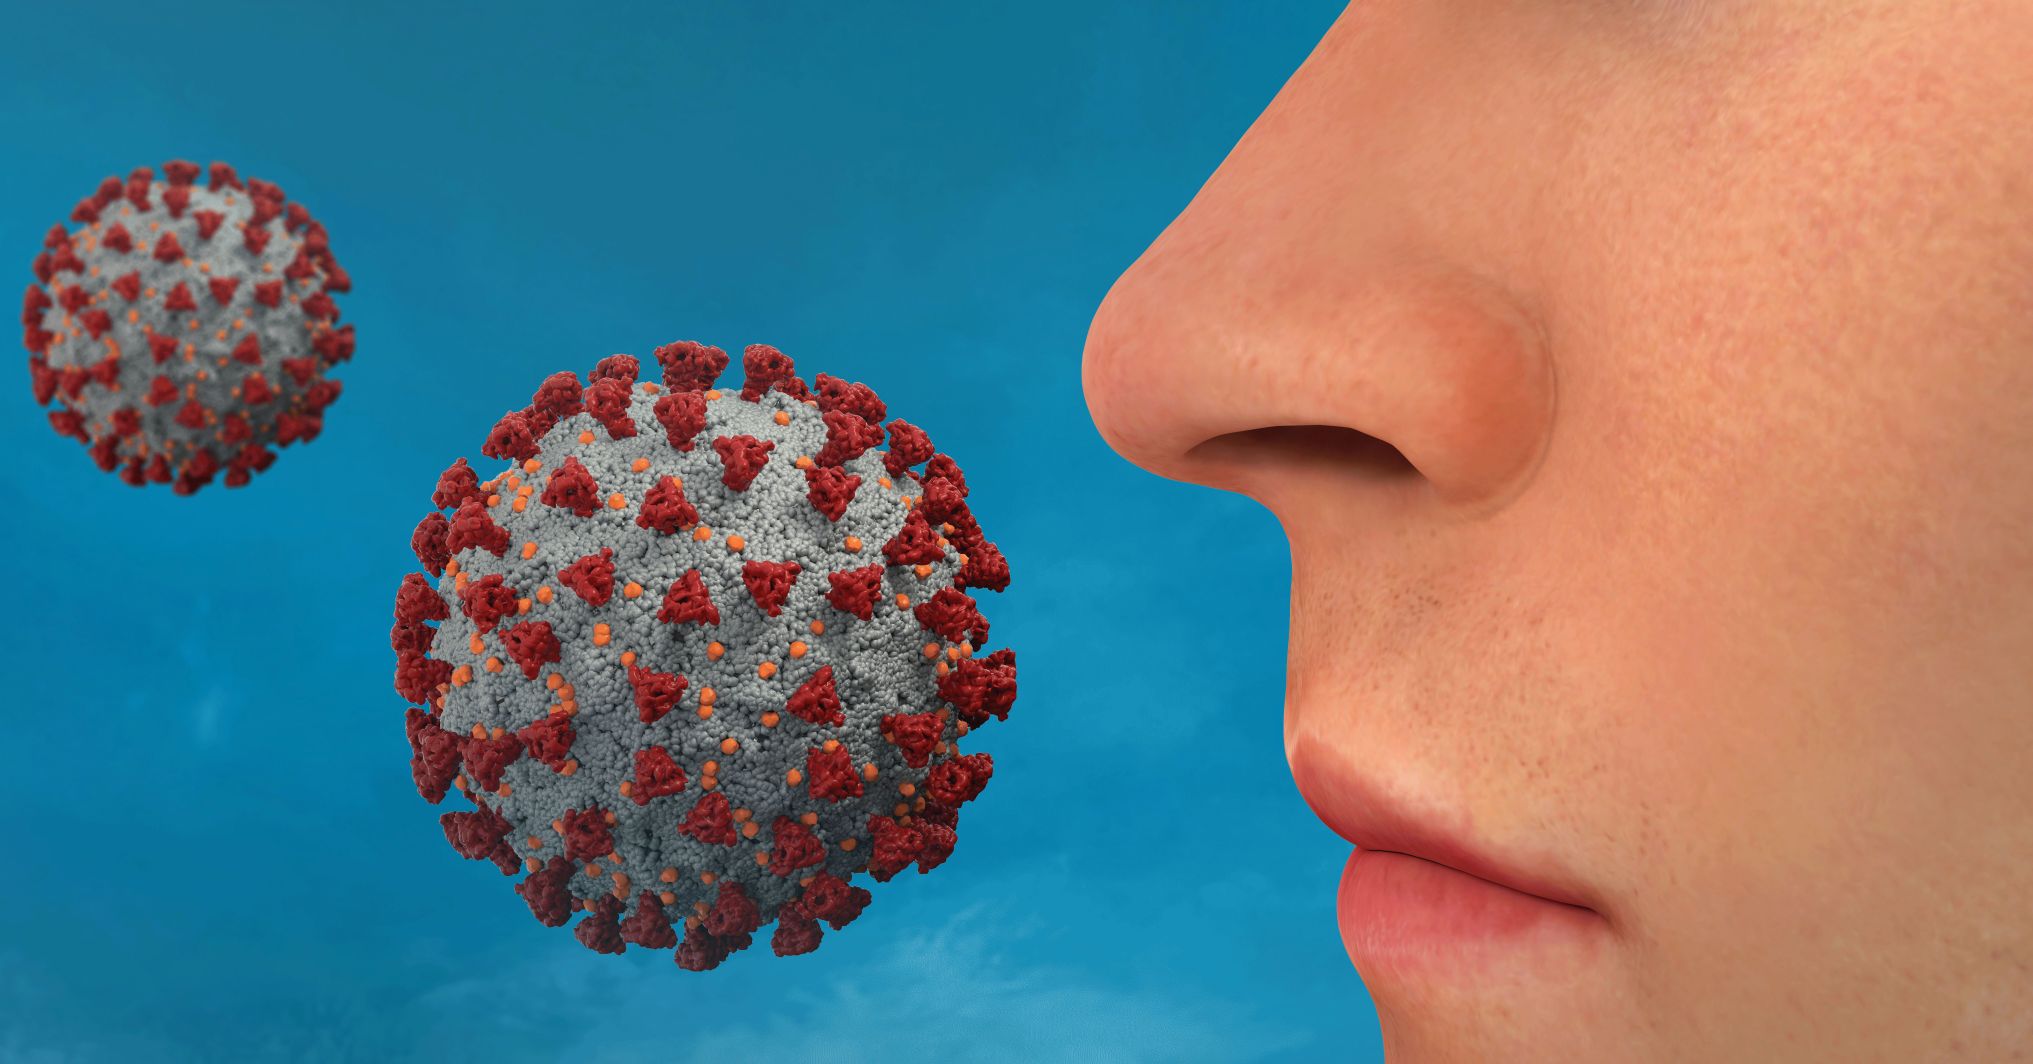 Virus in nose